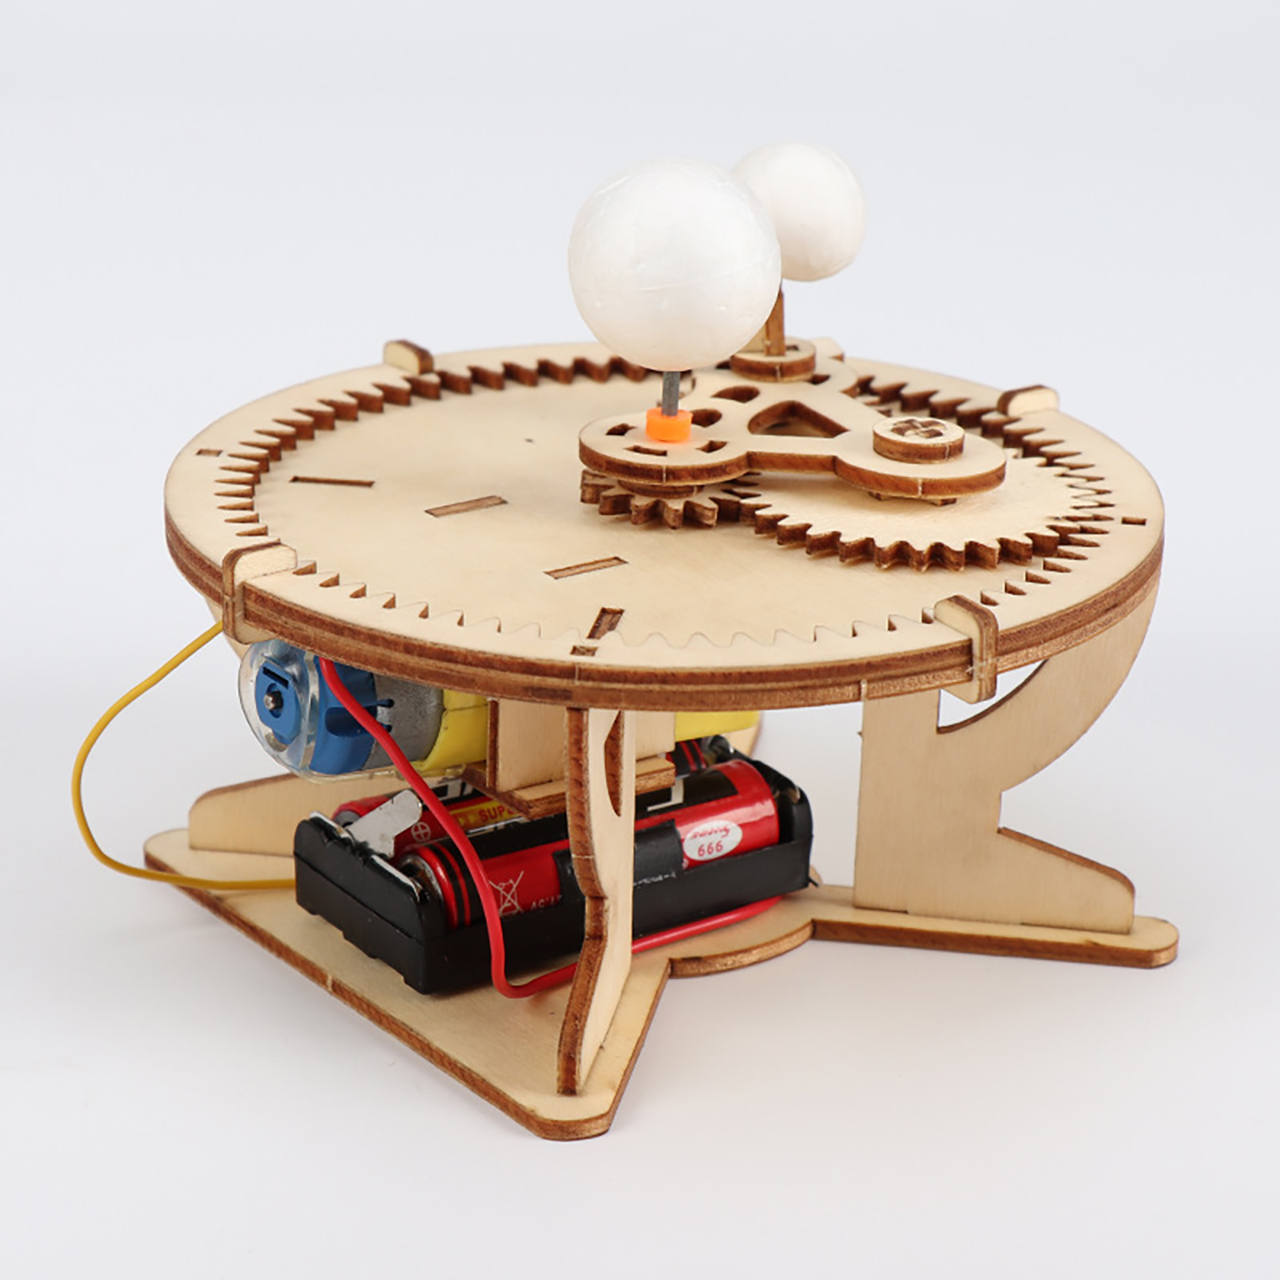 Đồ chơi trẻ em S08 thông minh sáng tạo STEM (STEAM) mô hình lắp ráp hệ thống mặt trời và các hành tinh trong vũ trụ bằng gỗ